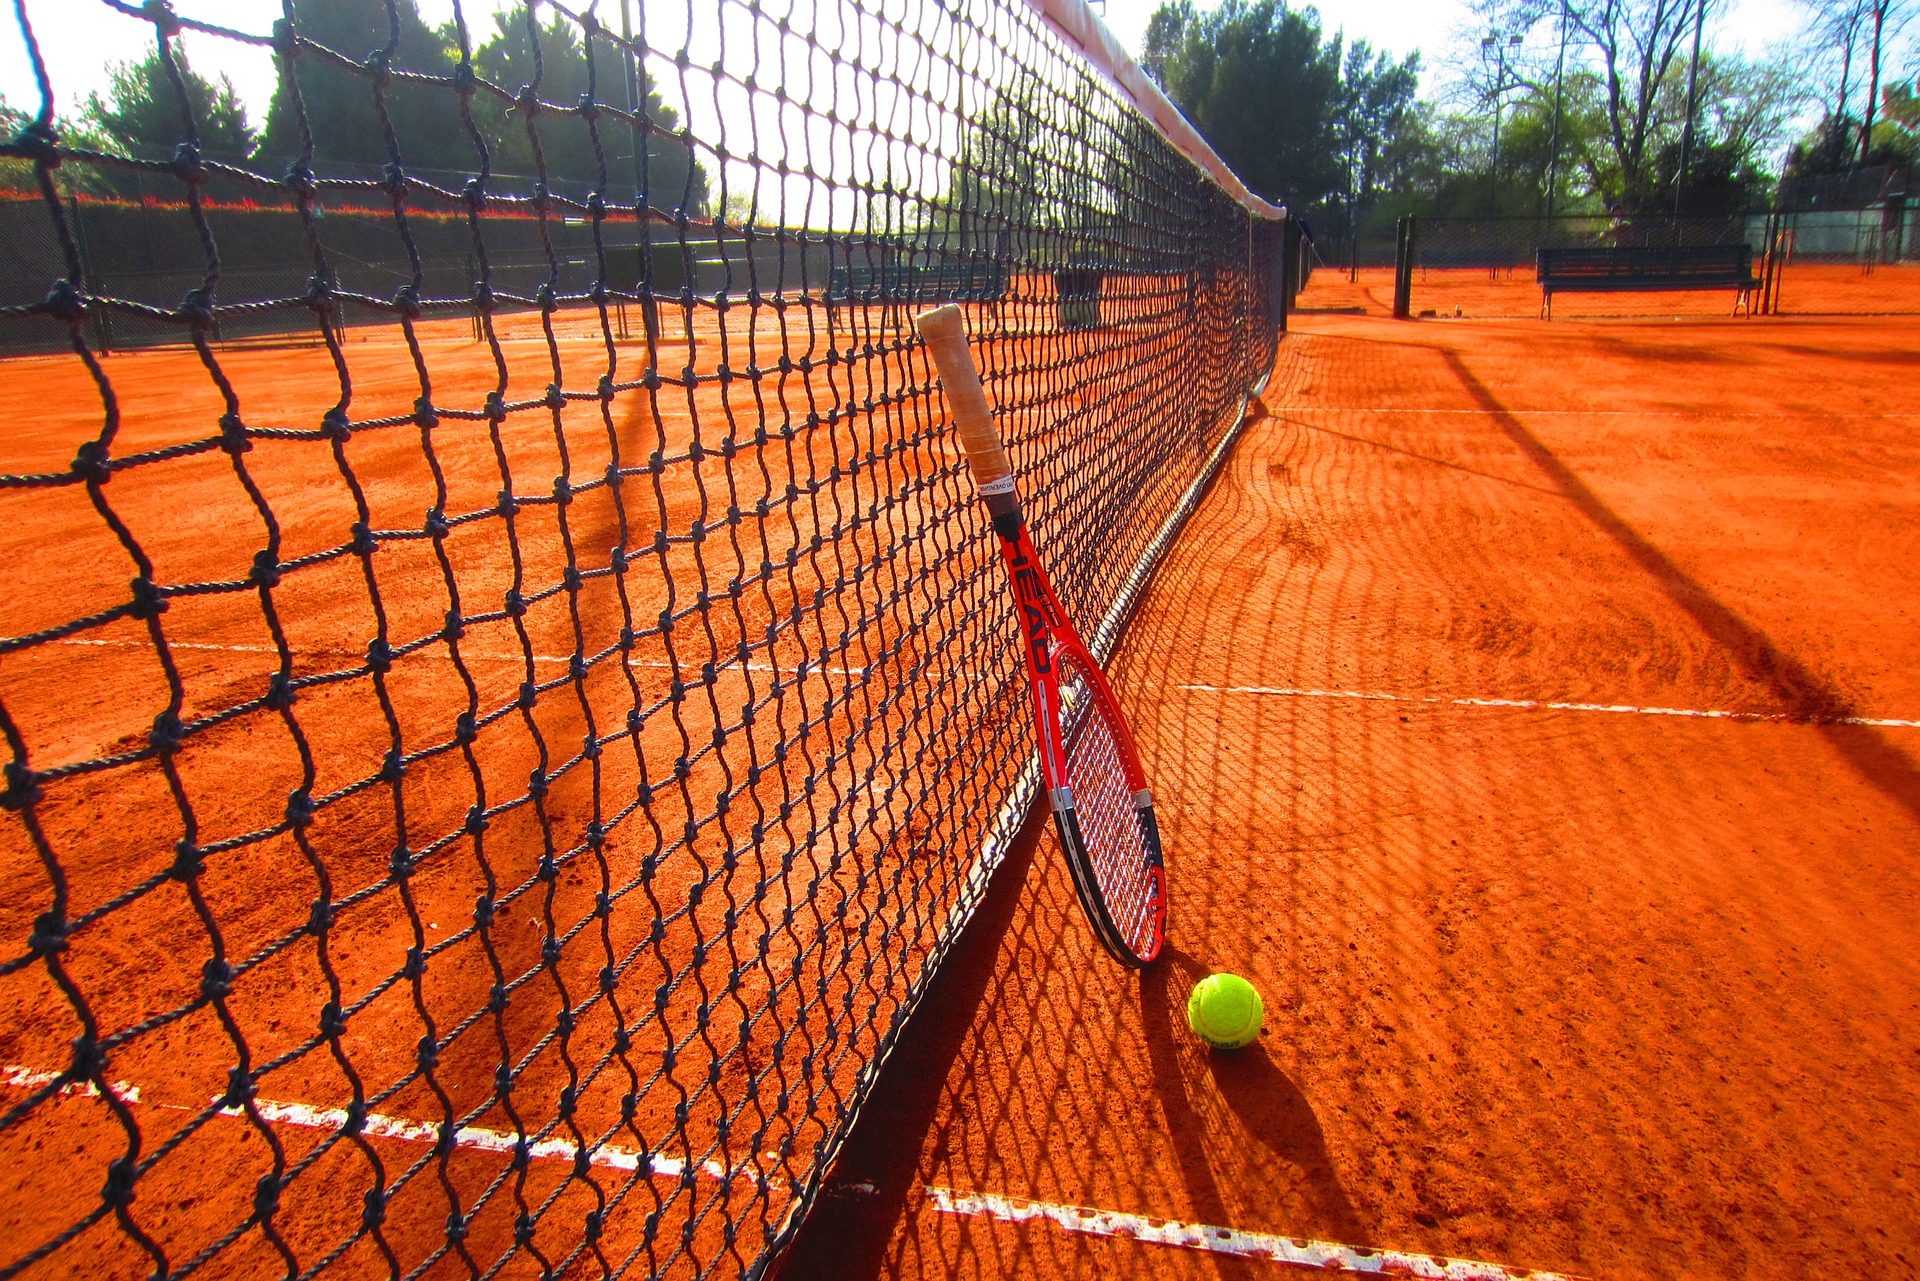 Tennisclub Ebstorf - 1 Schläger mit Ball lehnt gegen ein Tennisnetz.